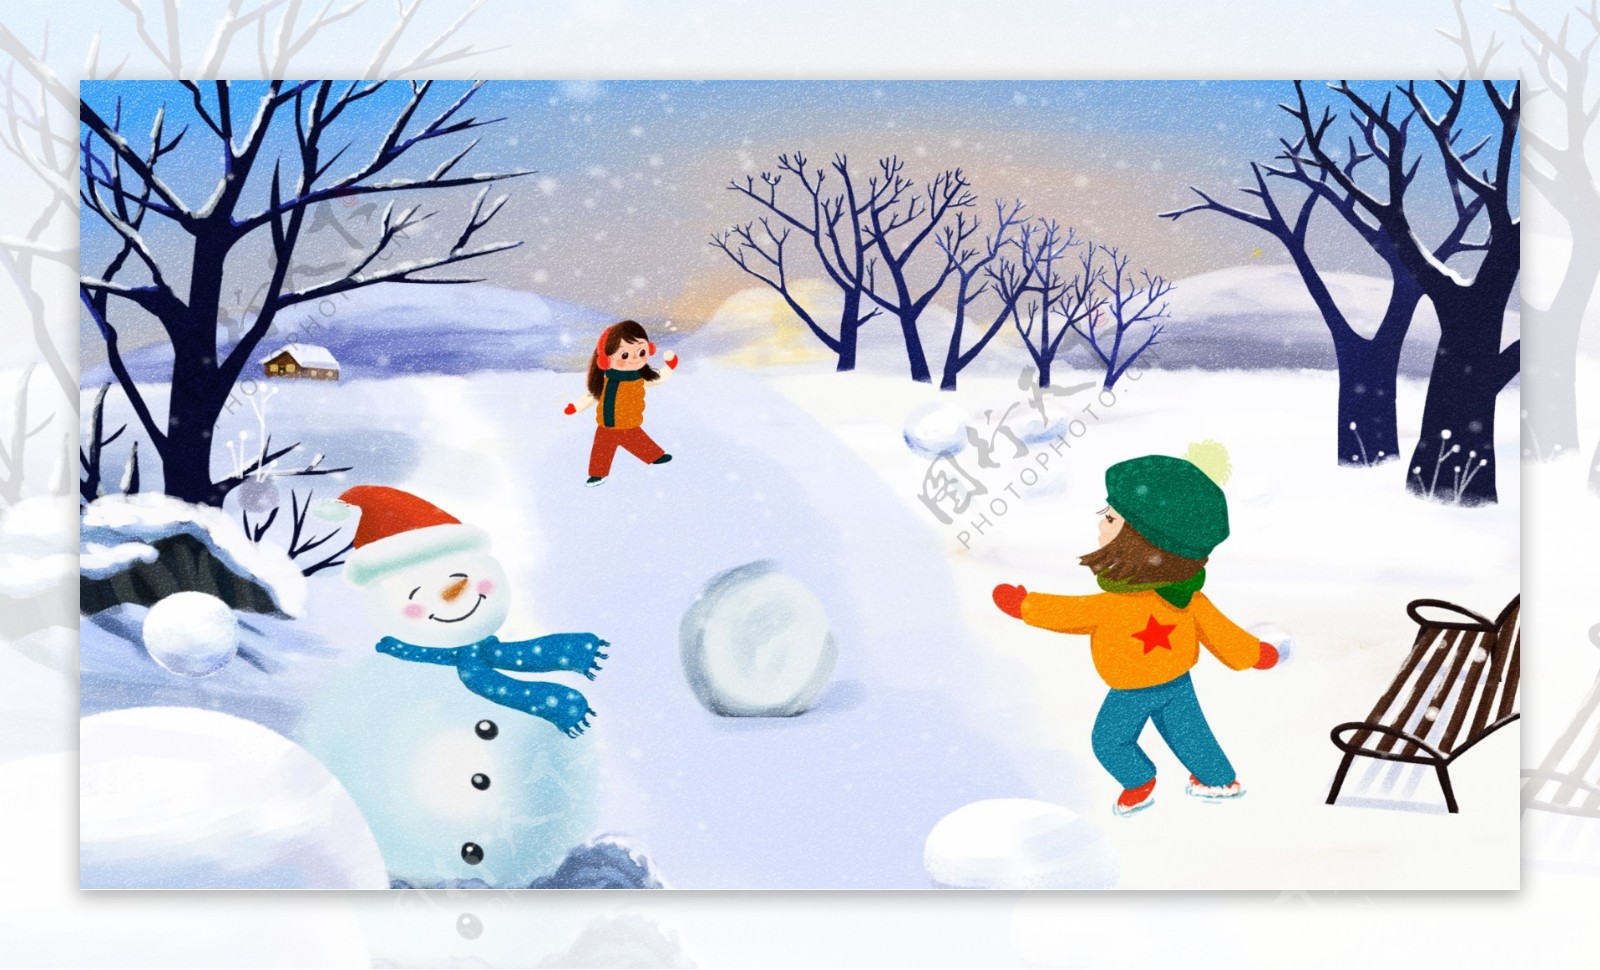 唯美冬季开心小伙伴一起打雪仗原创手绘插画